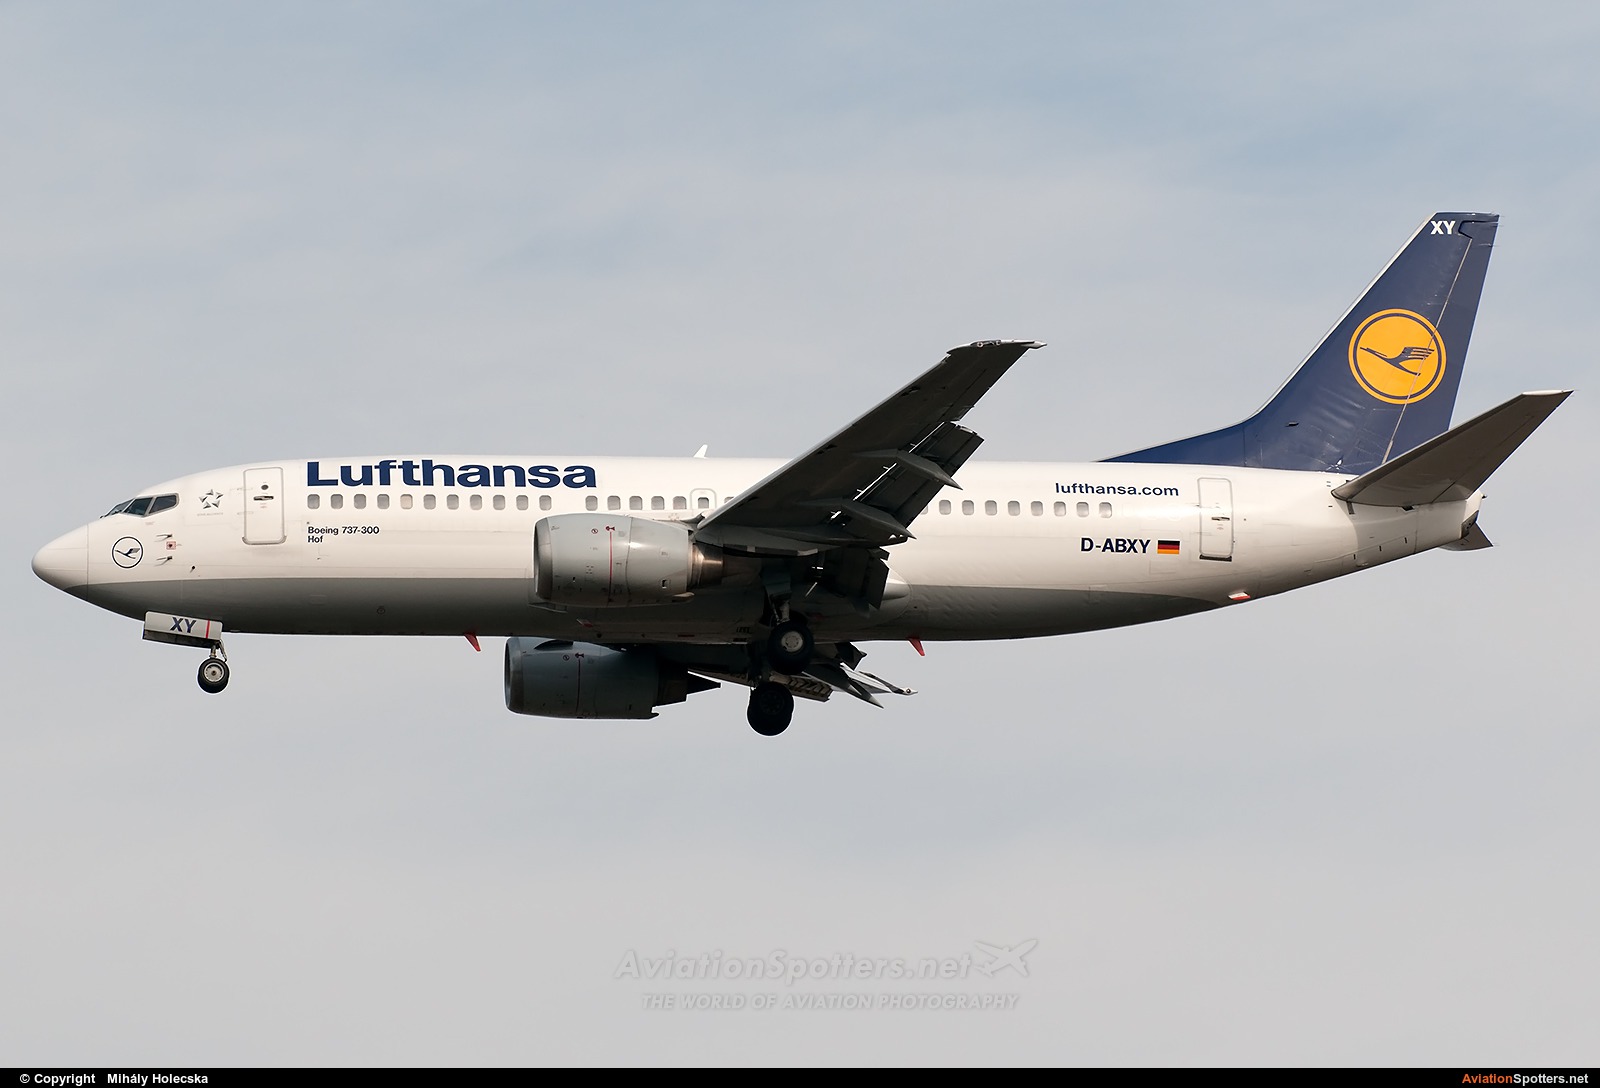 Lufthansa  -  737-300  (D-ABXY) By Mihály Holecska (Misixx)